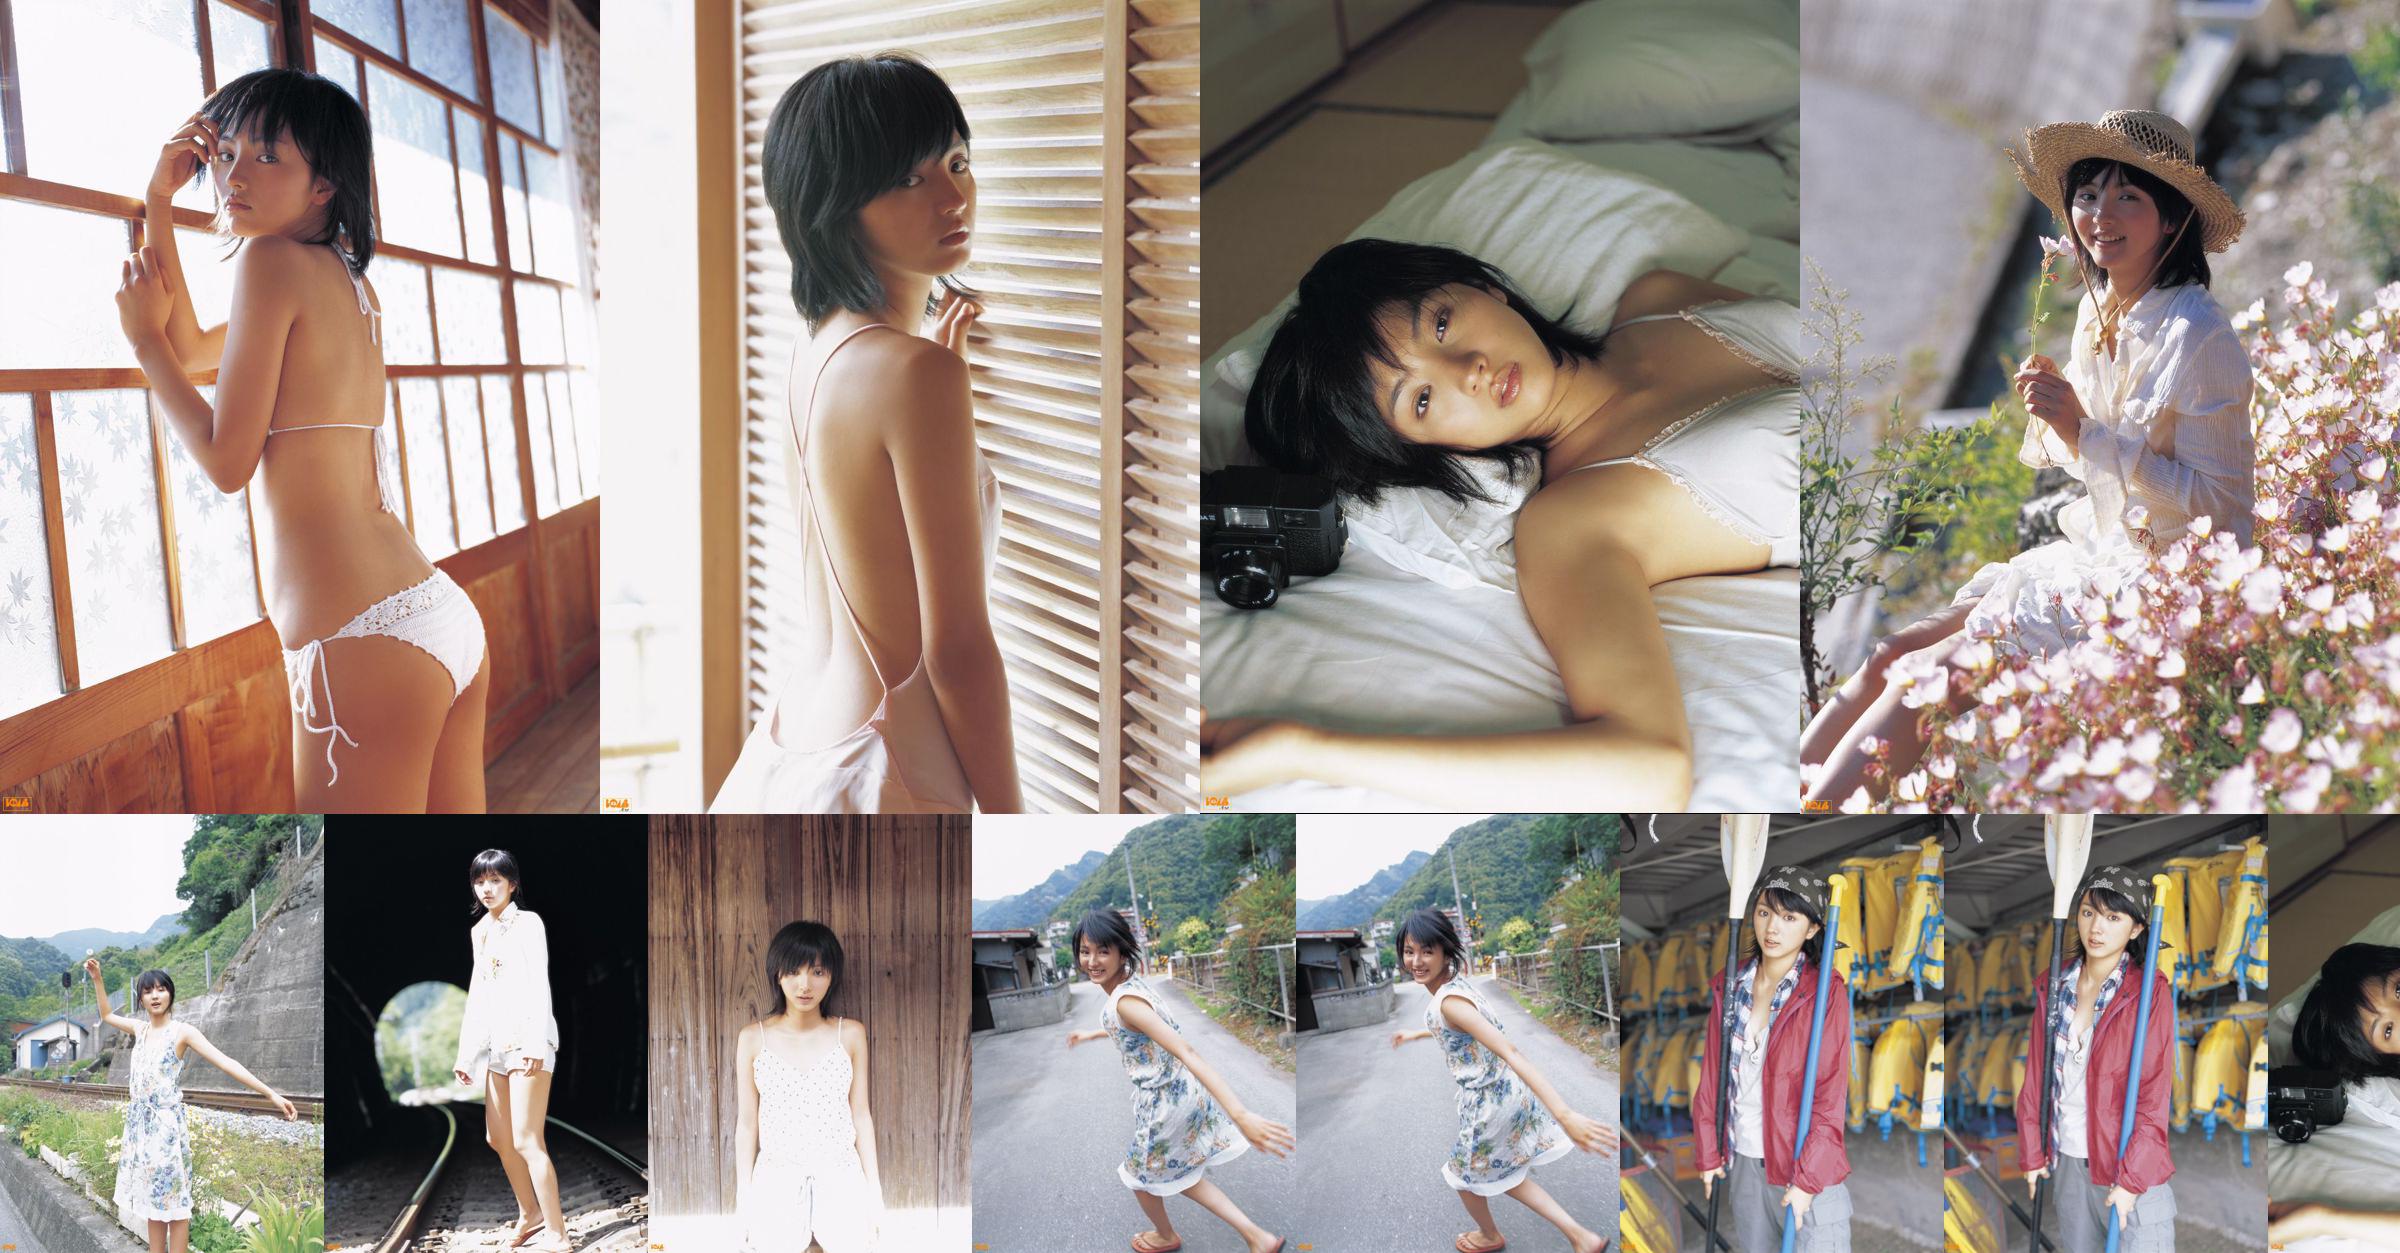 [Bomb.TV] Tháng 8 năm 2005 Hikari Mitsushima Hikari Mitsushima / Manshima Hikari No.757ffe Trang 2